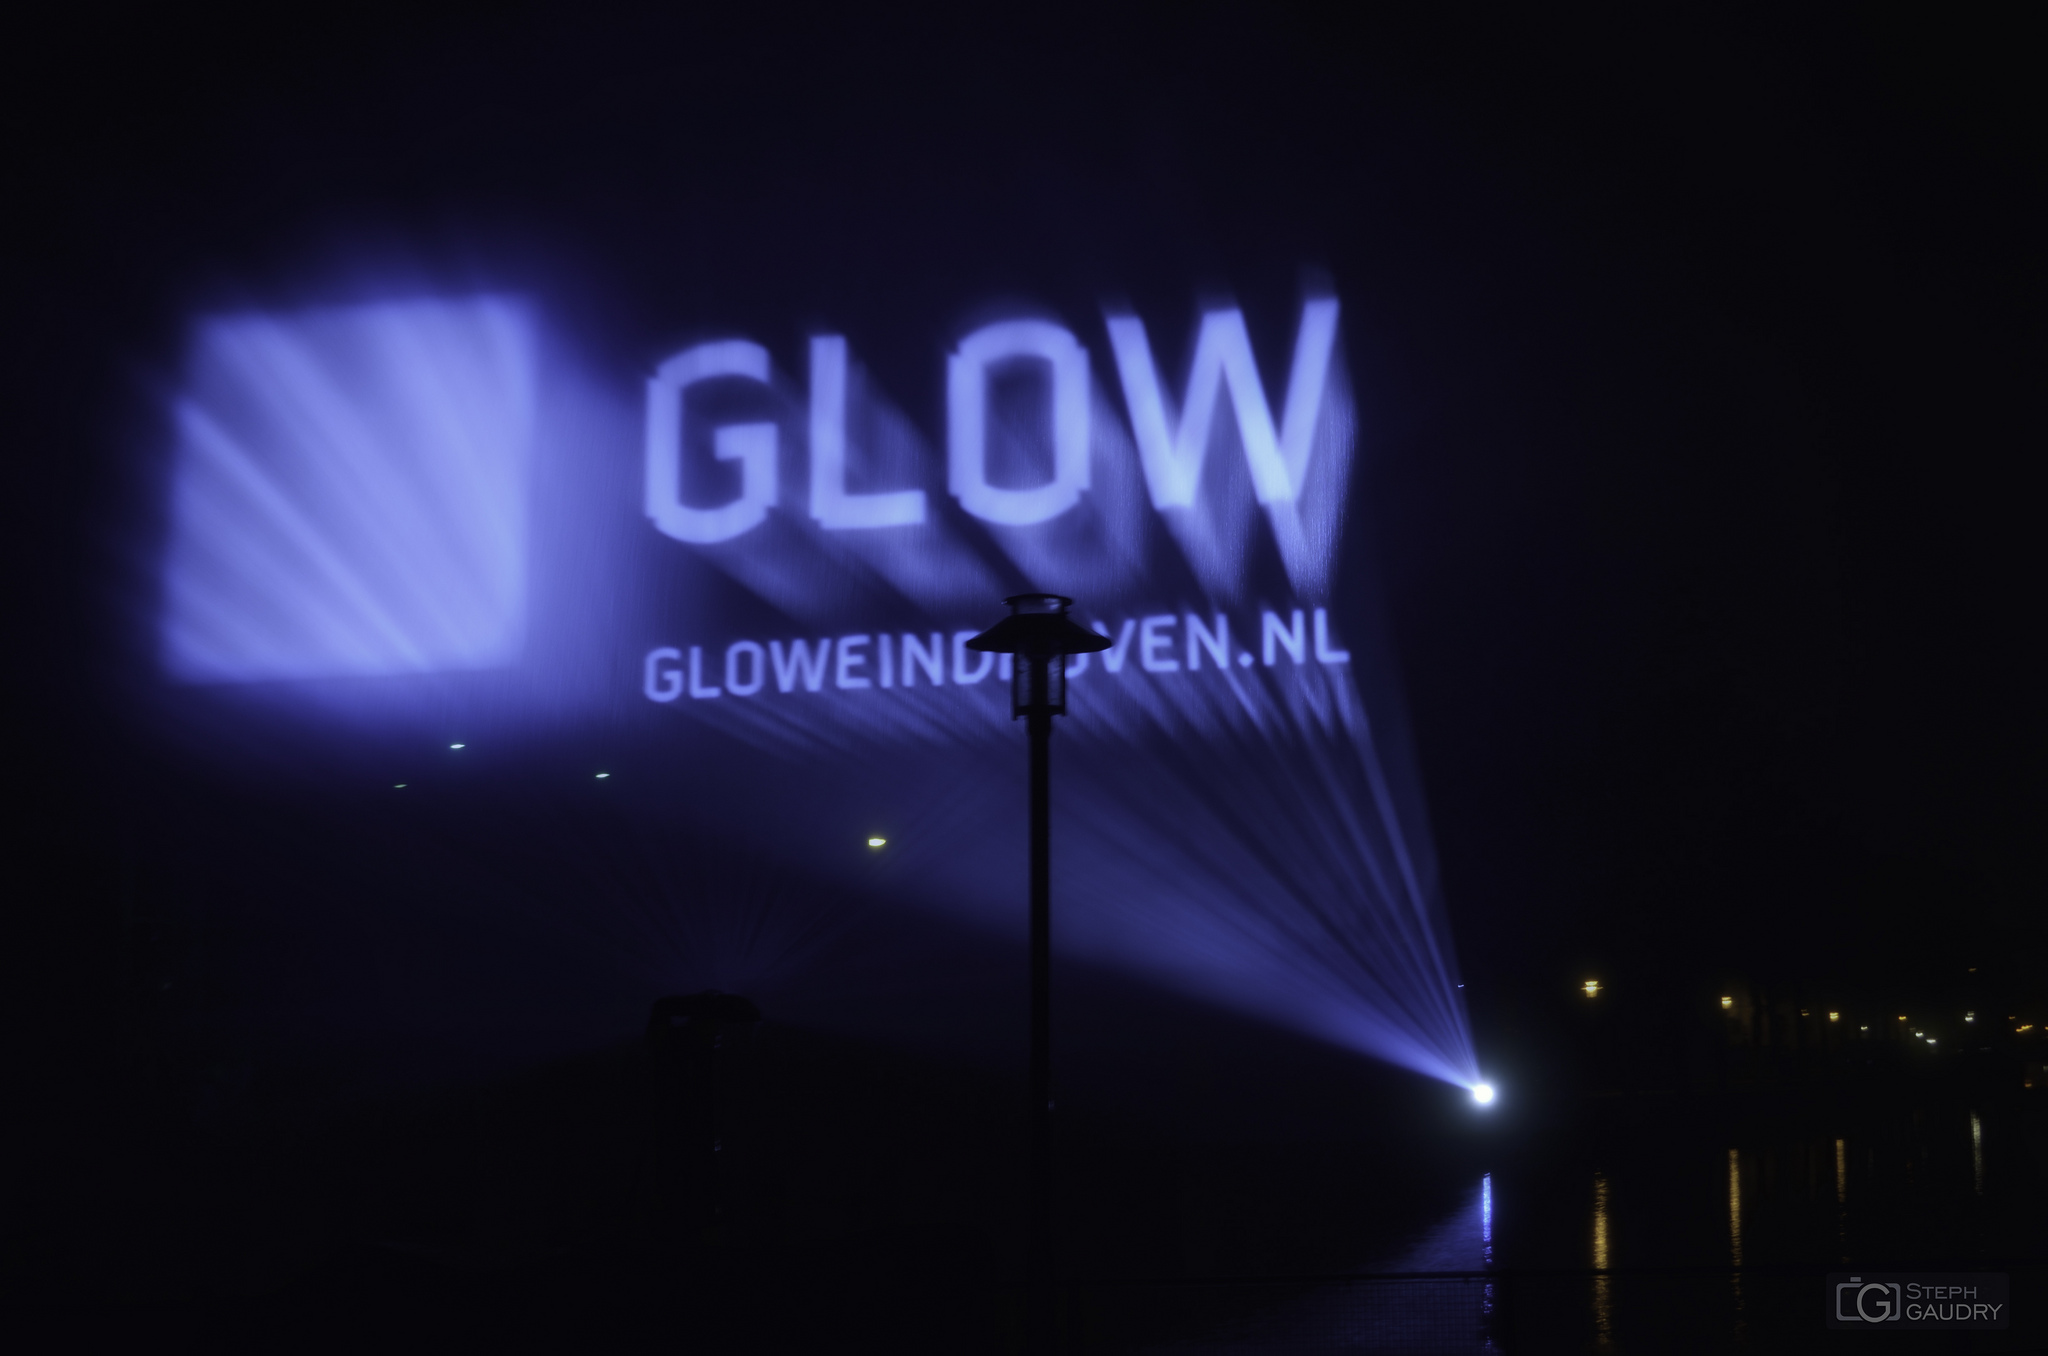 Eindhoven glow 2013 - Laser [Click to start slideshow]